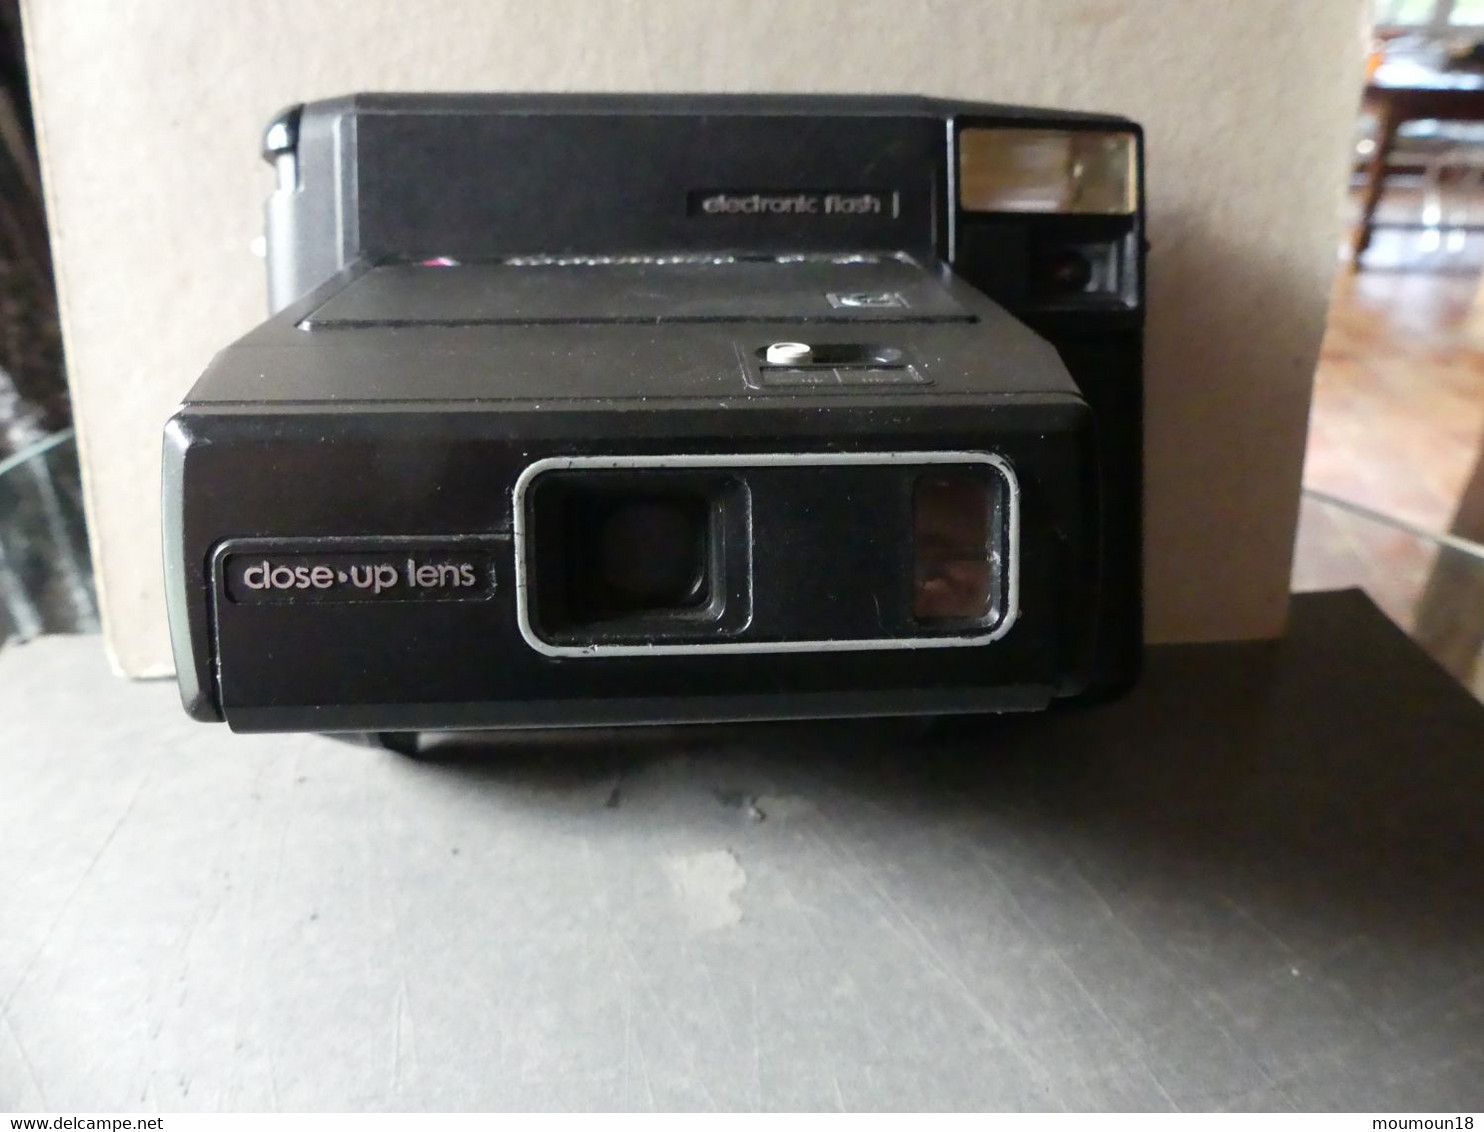 Kodamatic 970 L - Fotoapparate